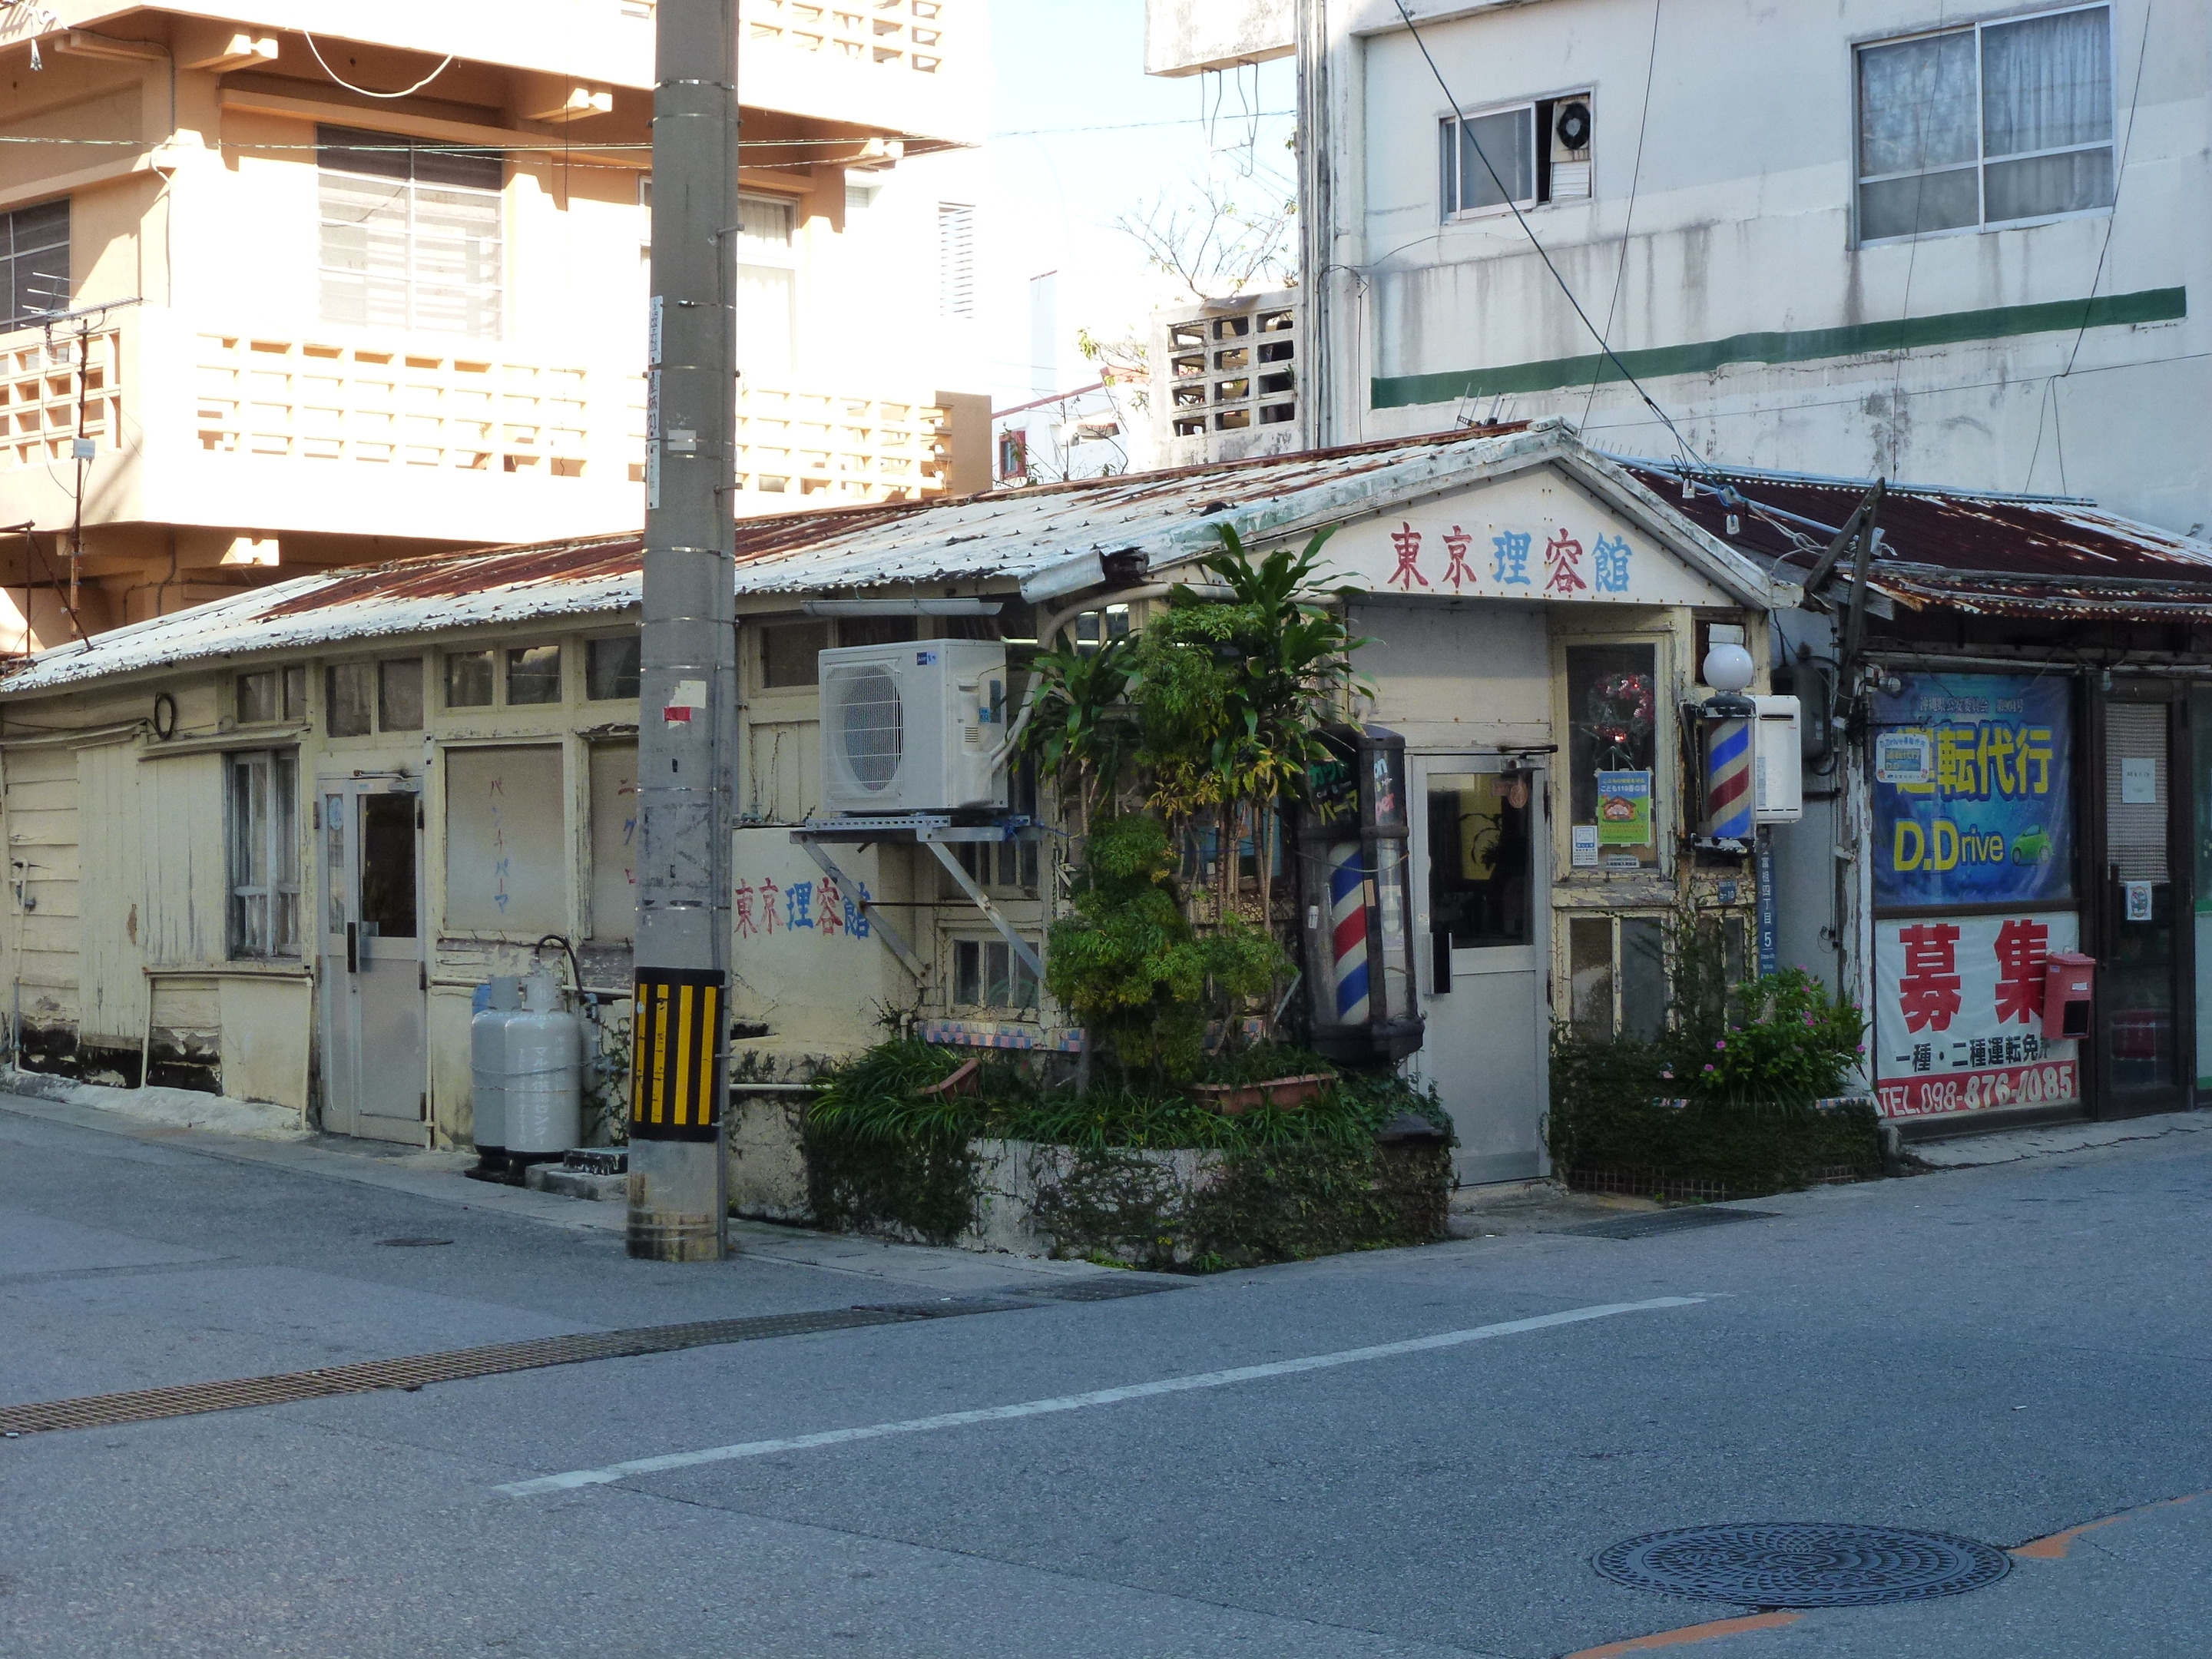 東京理容館 浦添市 屋富祖大通り 未成年でも診察可能な性病治療は沖縄のなしろハルンクリニックで